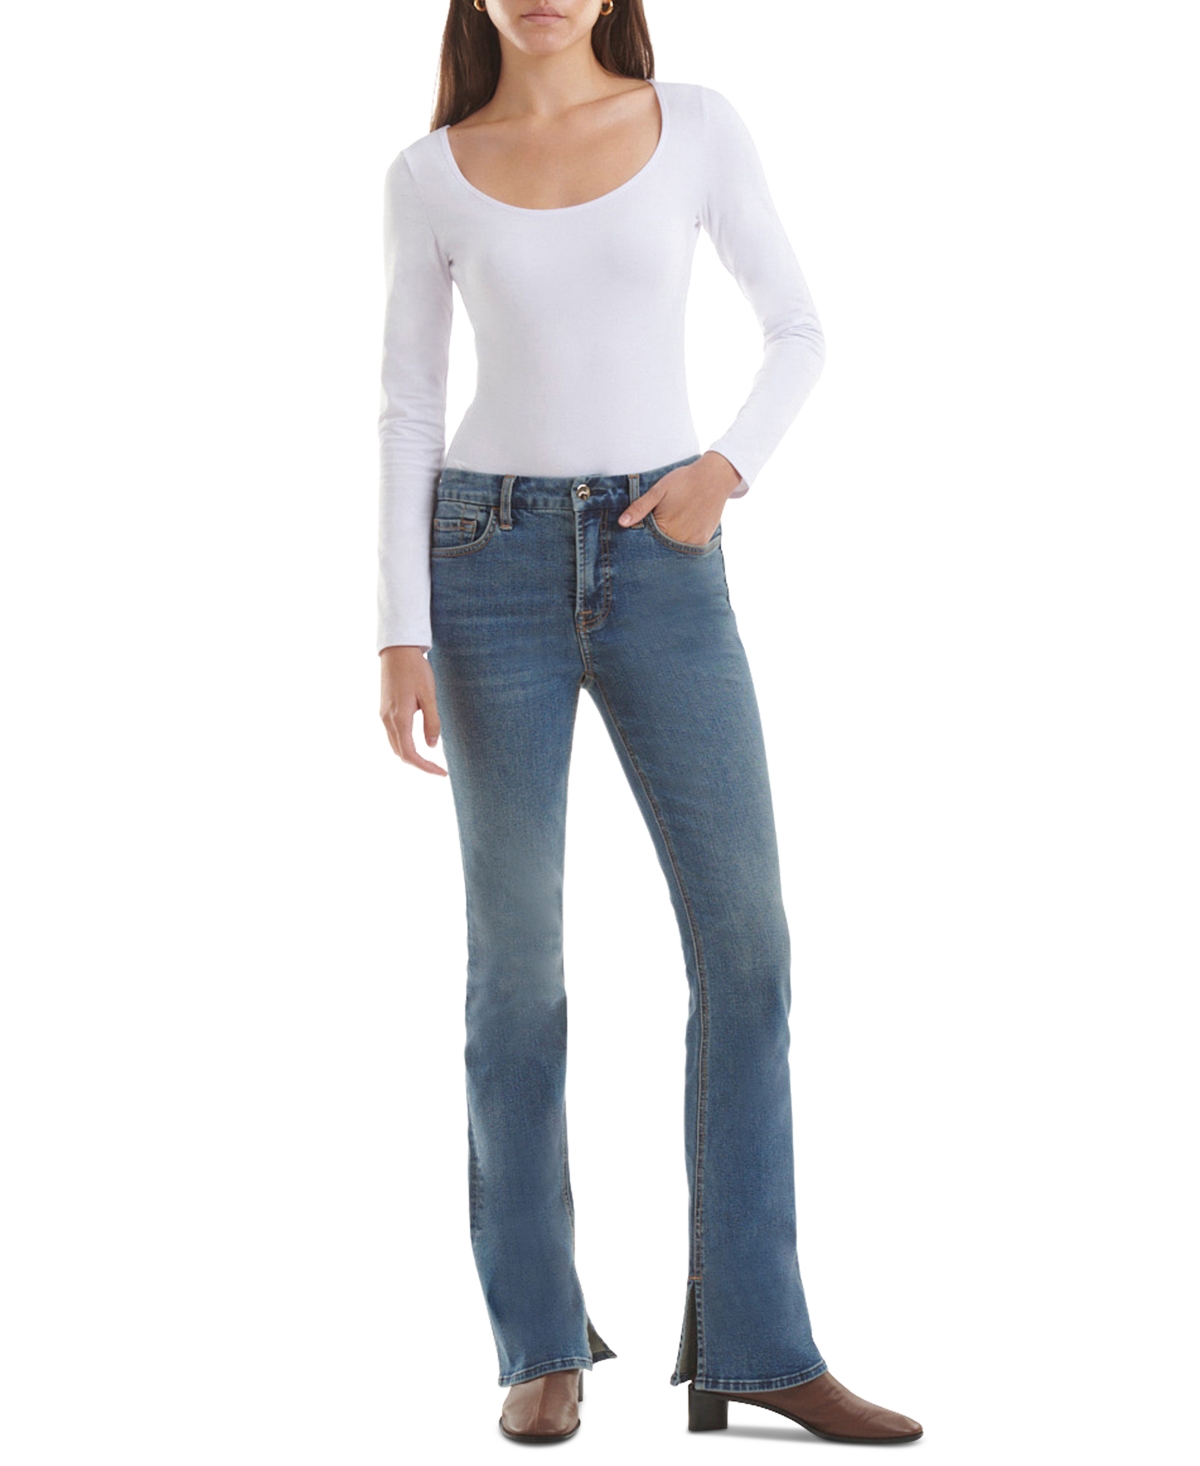 JEN7 by 7 For All Mankind Women's Slit-Hem Slim Bootcut Jeans